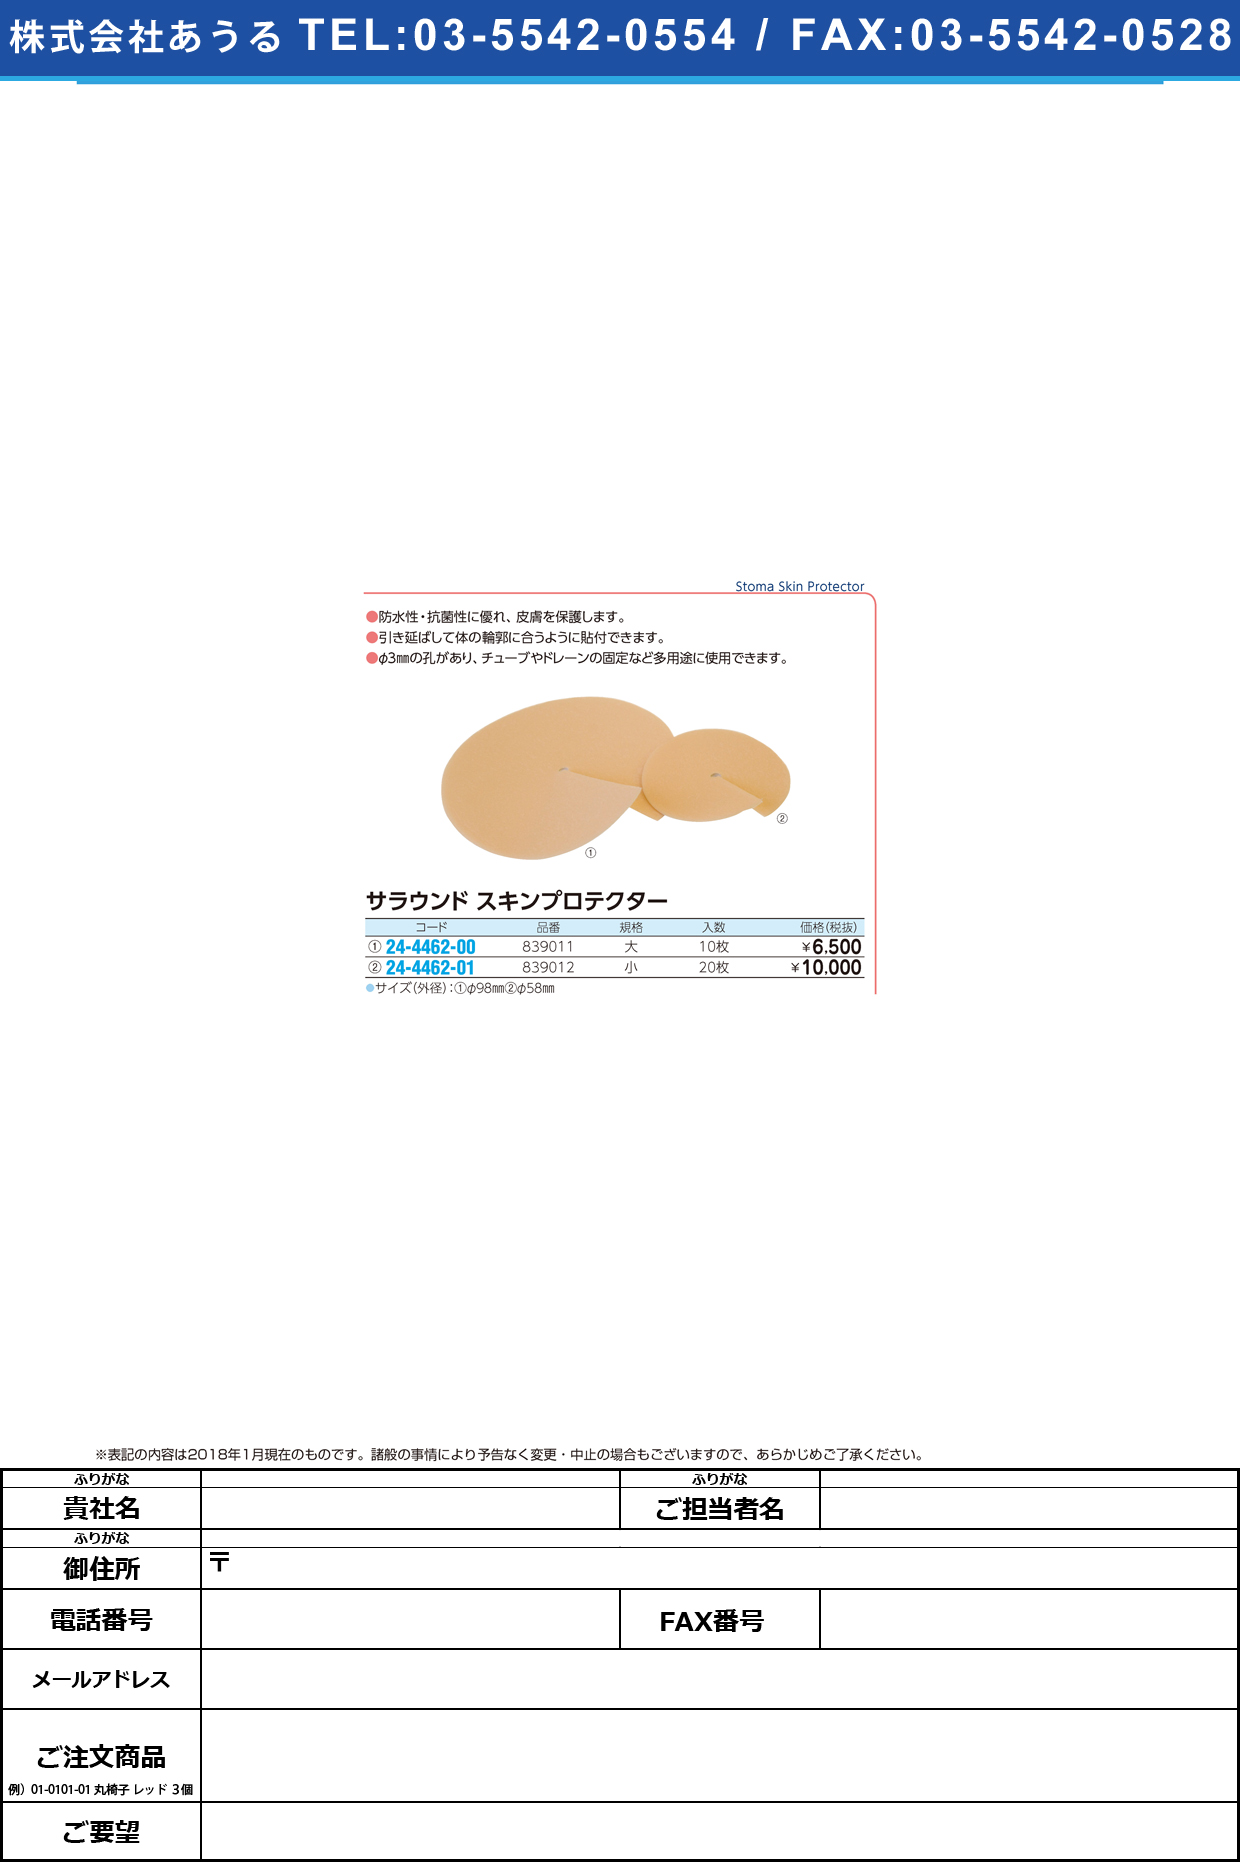 (24-4462-01)サラウンドスキンプロテクター 839012(ｼｮｳ)20ﾏｲ ｻﾗｳﾝﾄﾞｽｷﾝﾌﾟﾛﾃｸﾀｰ【1箱単位】【2019年カタログ商品】